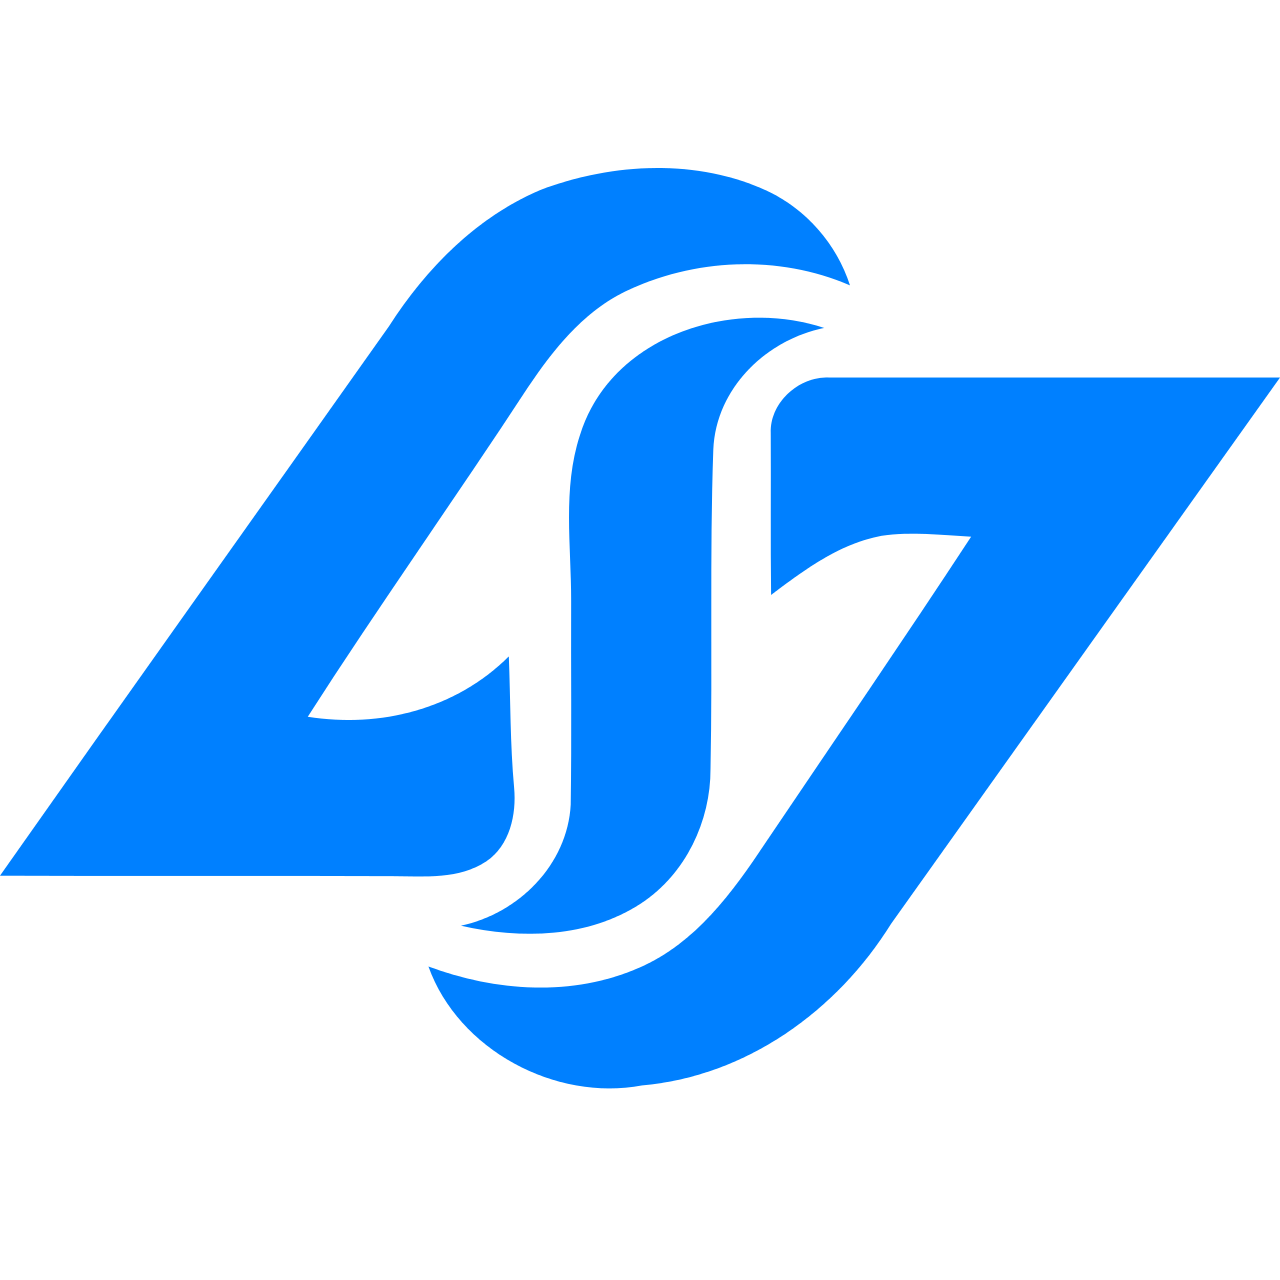 Counter Logic Gaming logo